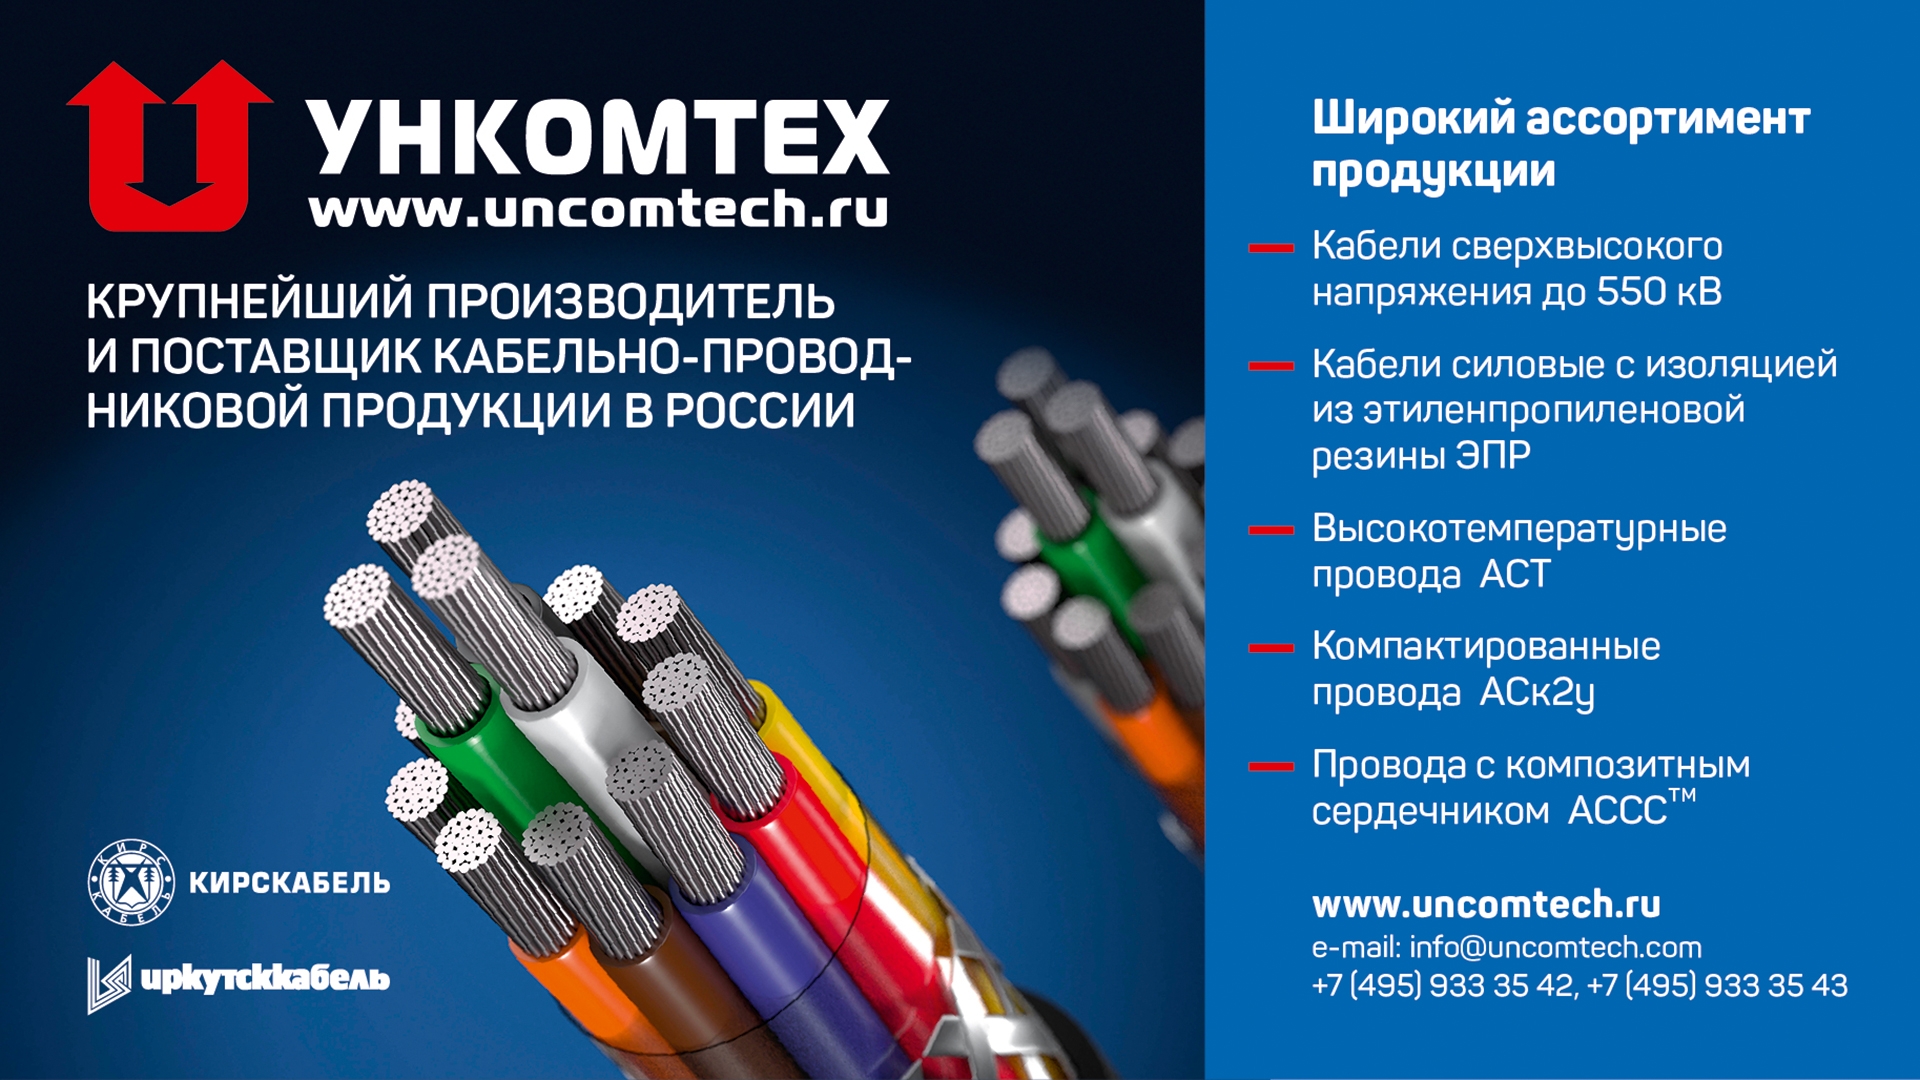 Ункомтех - Рекламный макет